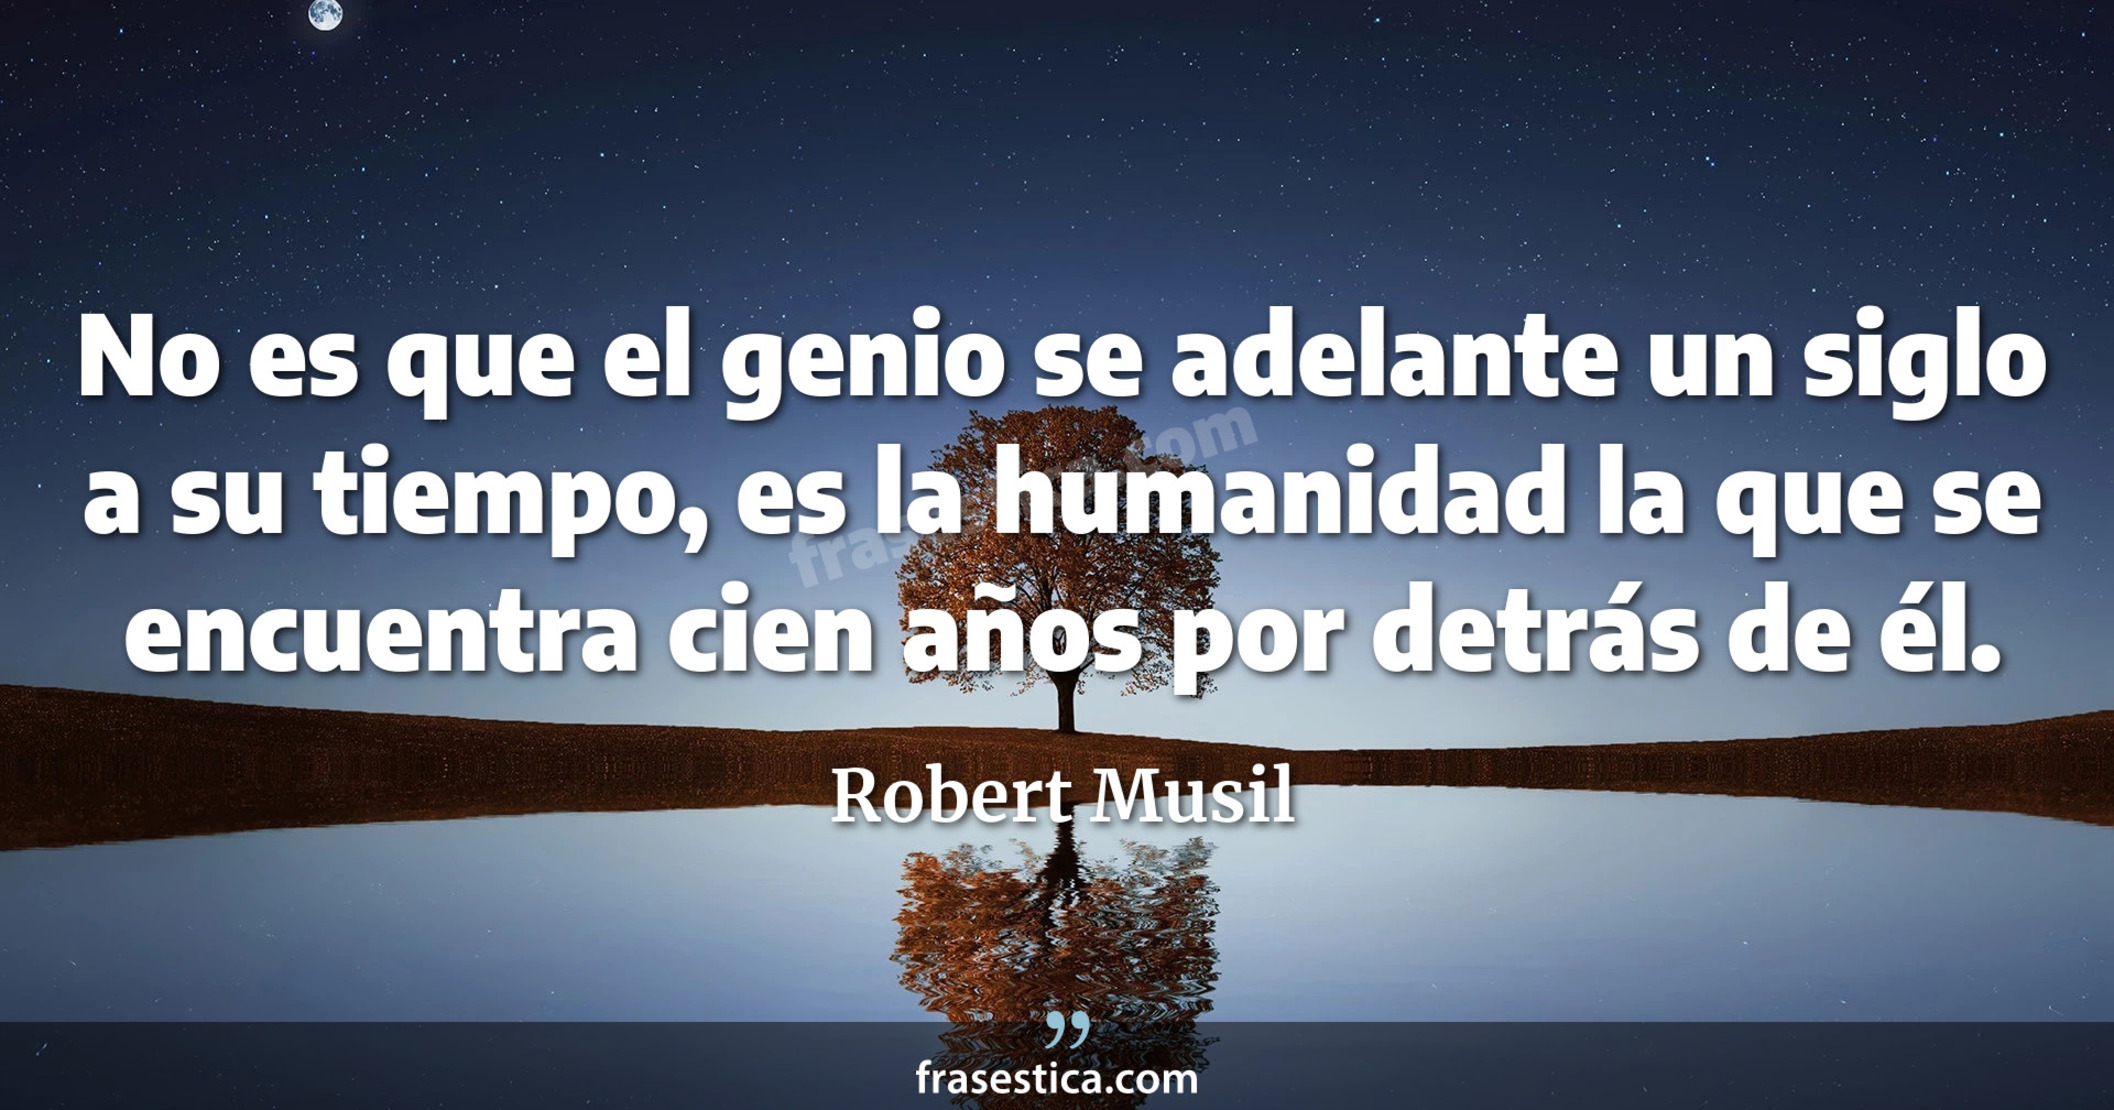 No es que el genio se adelante un siglo a su tiempo, es la humanidad la que se encuentra cien años por detrás de él. - Robert Musil